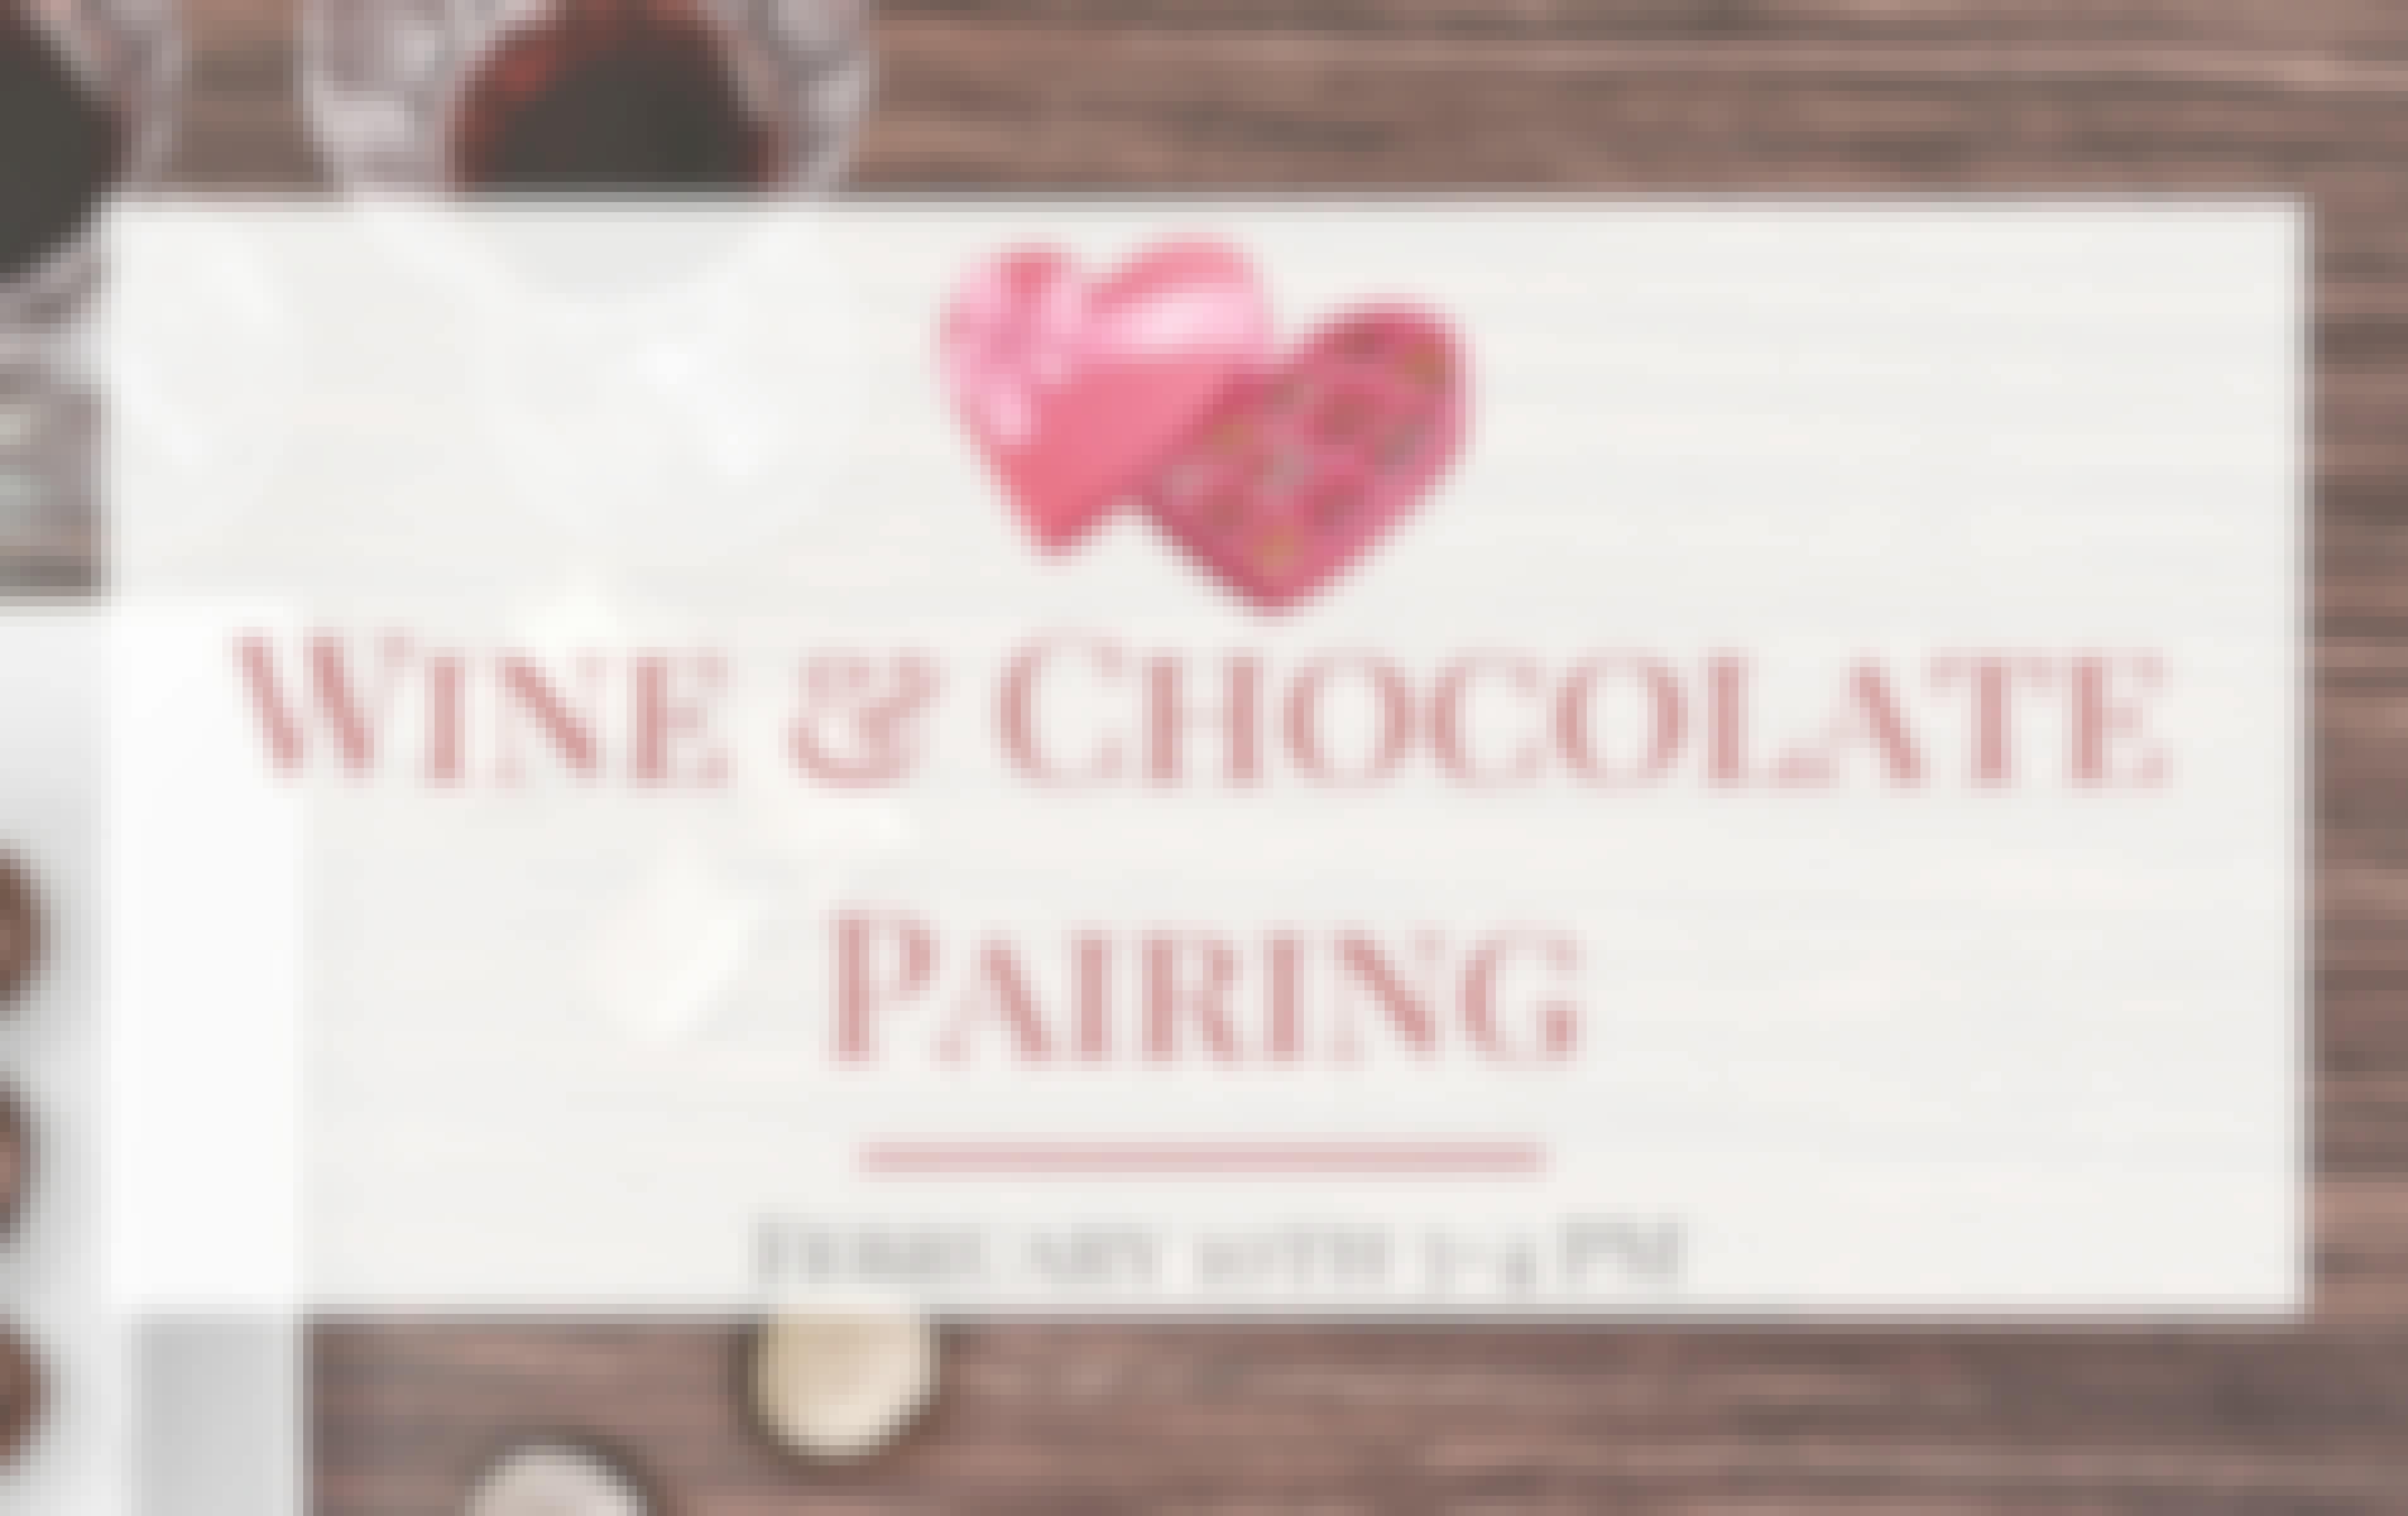 Wine & Chocolate Pairing